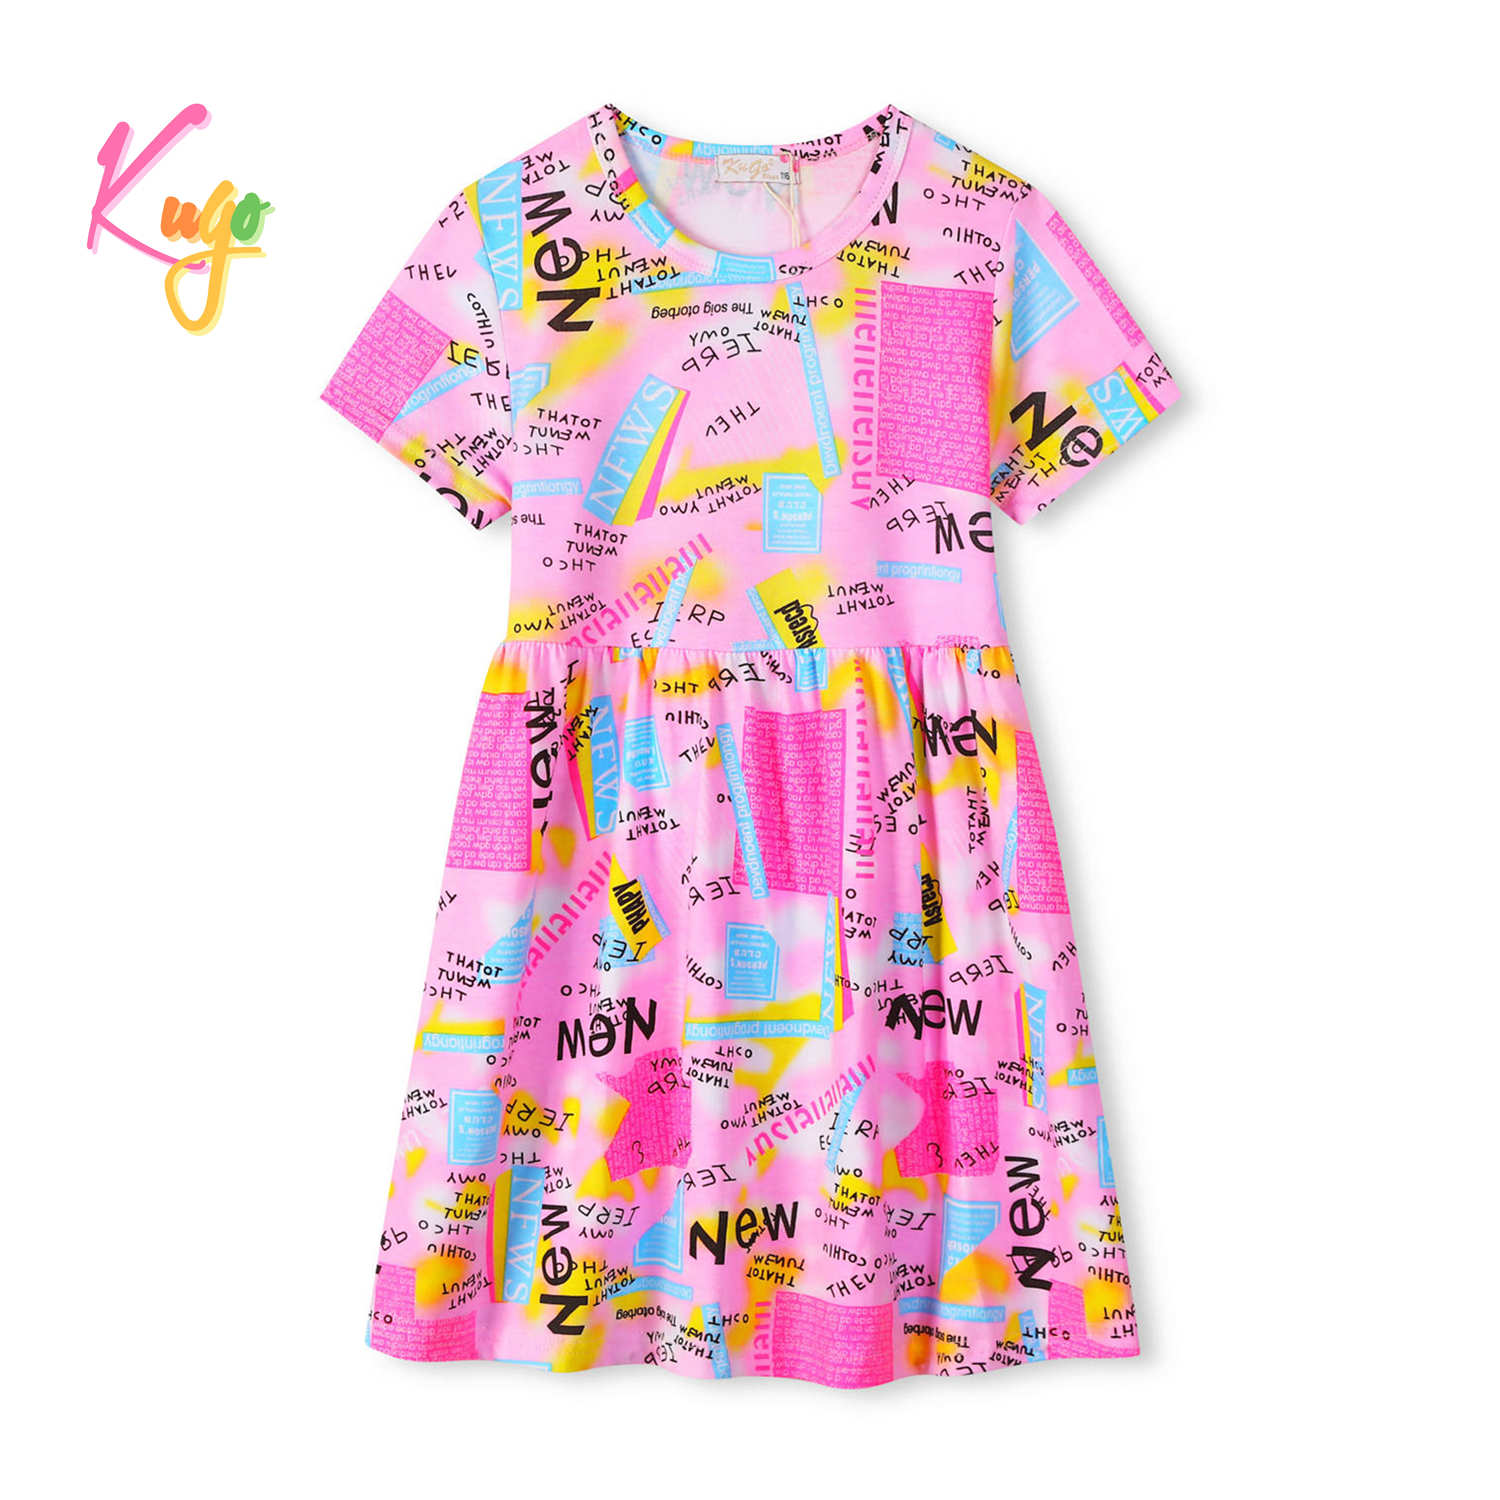 Dívčí šaty - KUGO KS2308, růžová Barva: Růžová, Velikost: 116